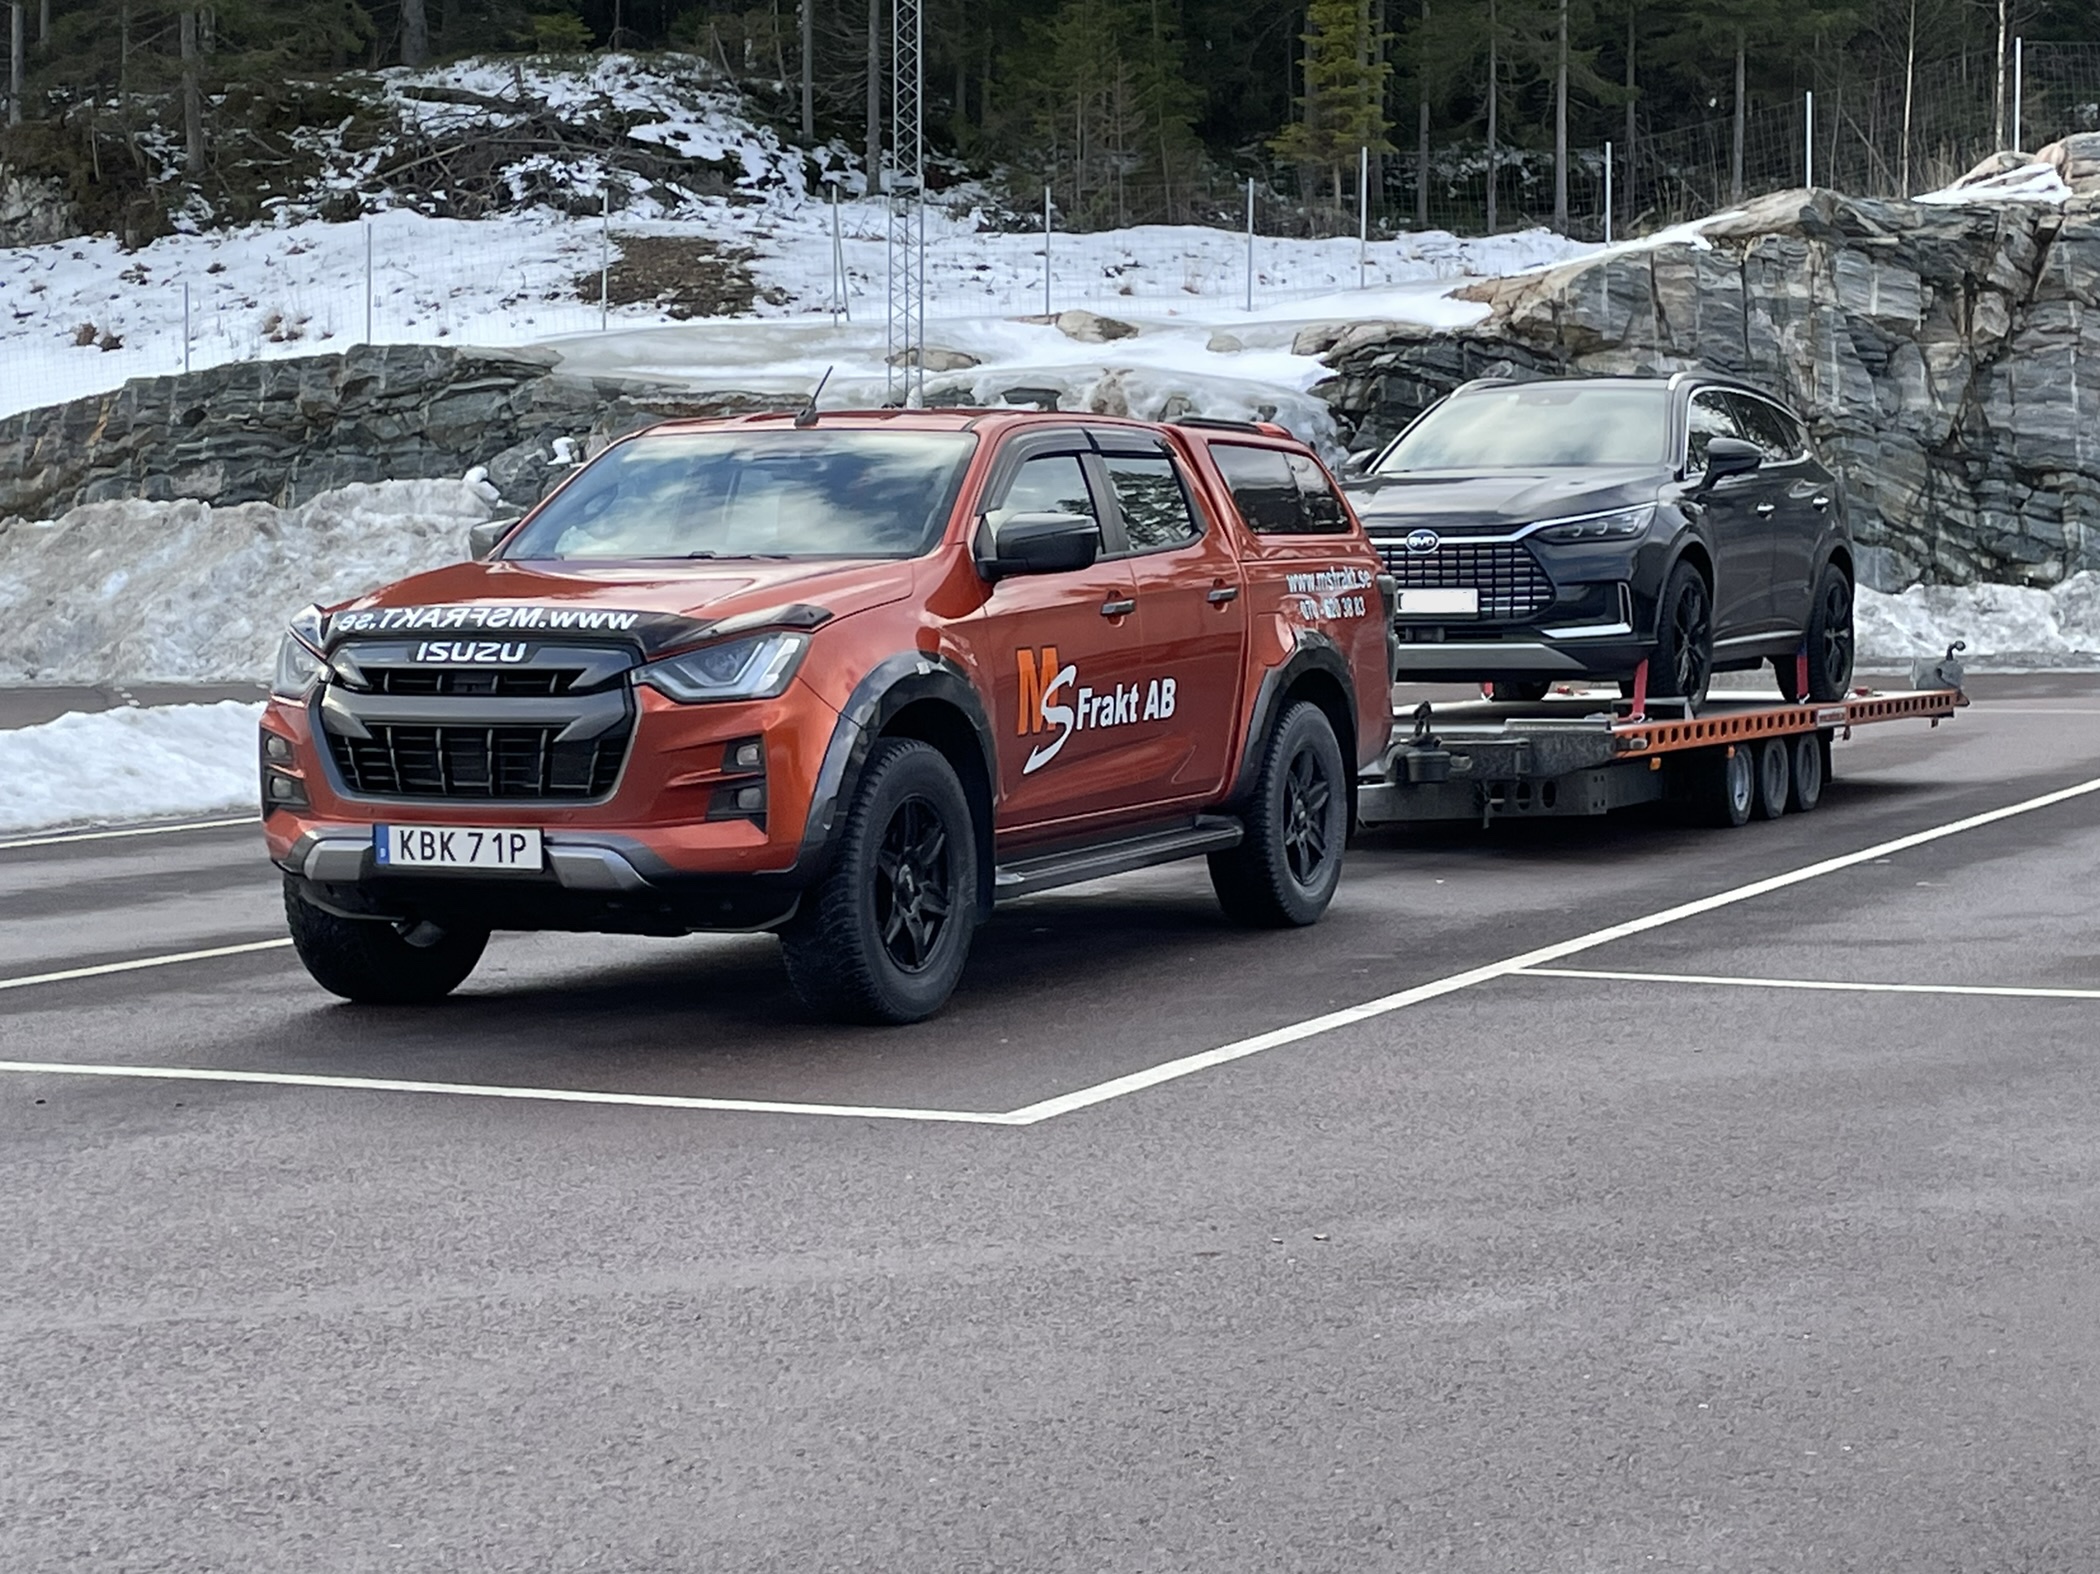 Fordonstransport Sundsvall